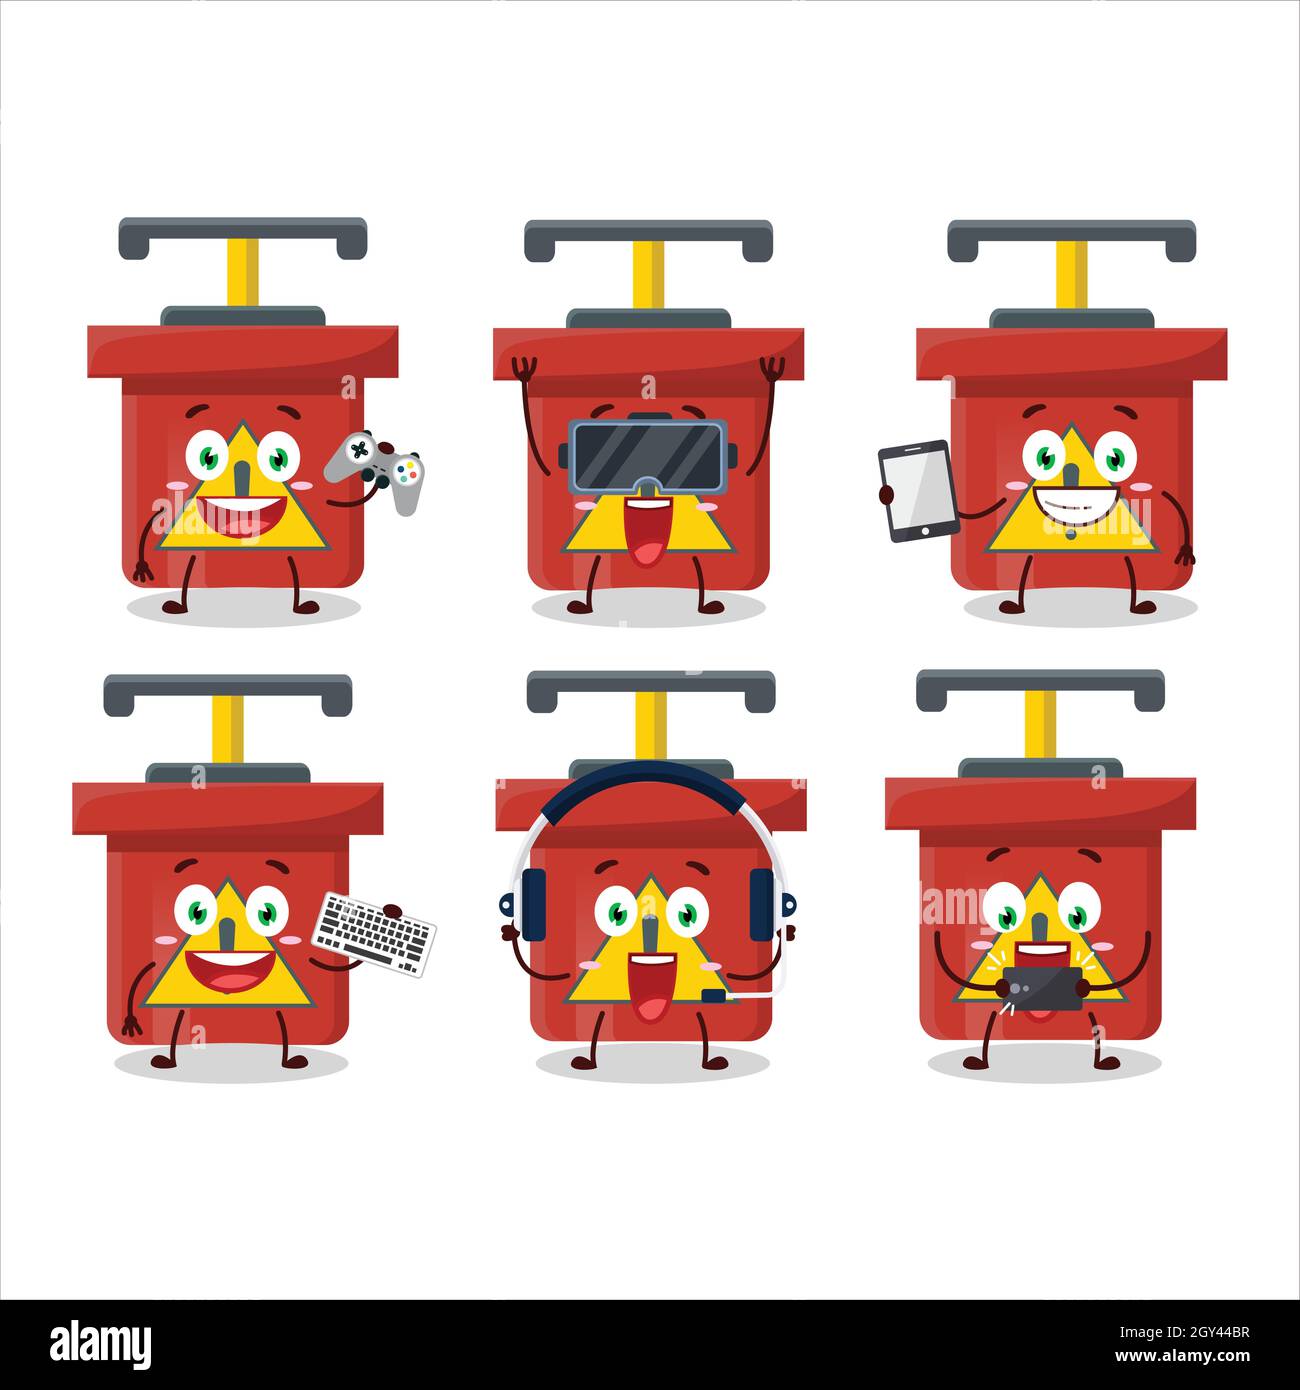 Dynamite dynamite explosion machine personnage de dessin animé jouent à des jeux avec divers émoticônes mignons.Illustration vectorielle Illustration de Vecteur